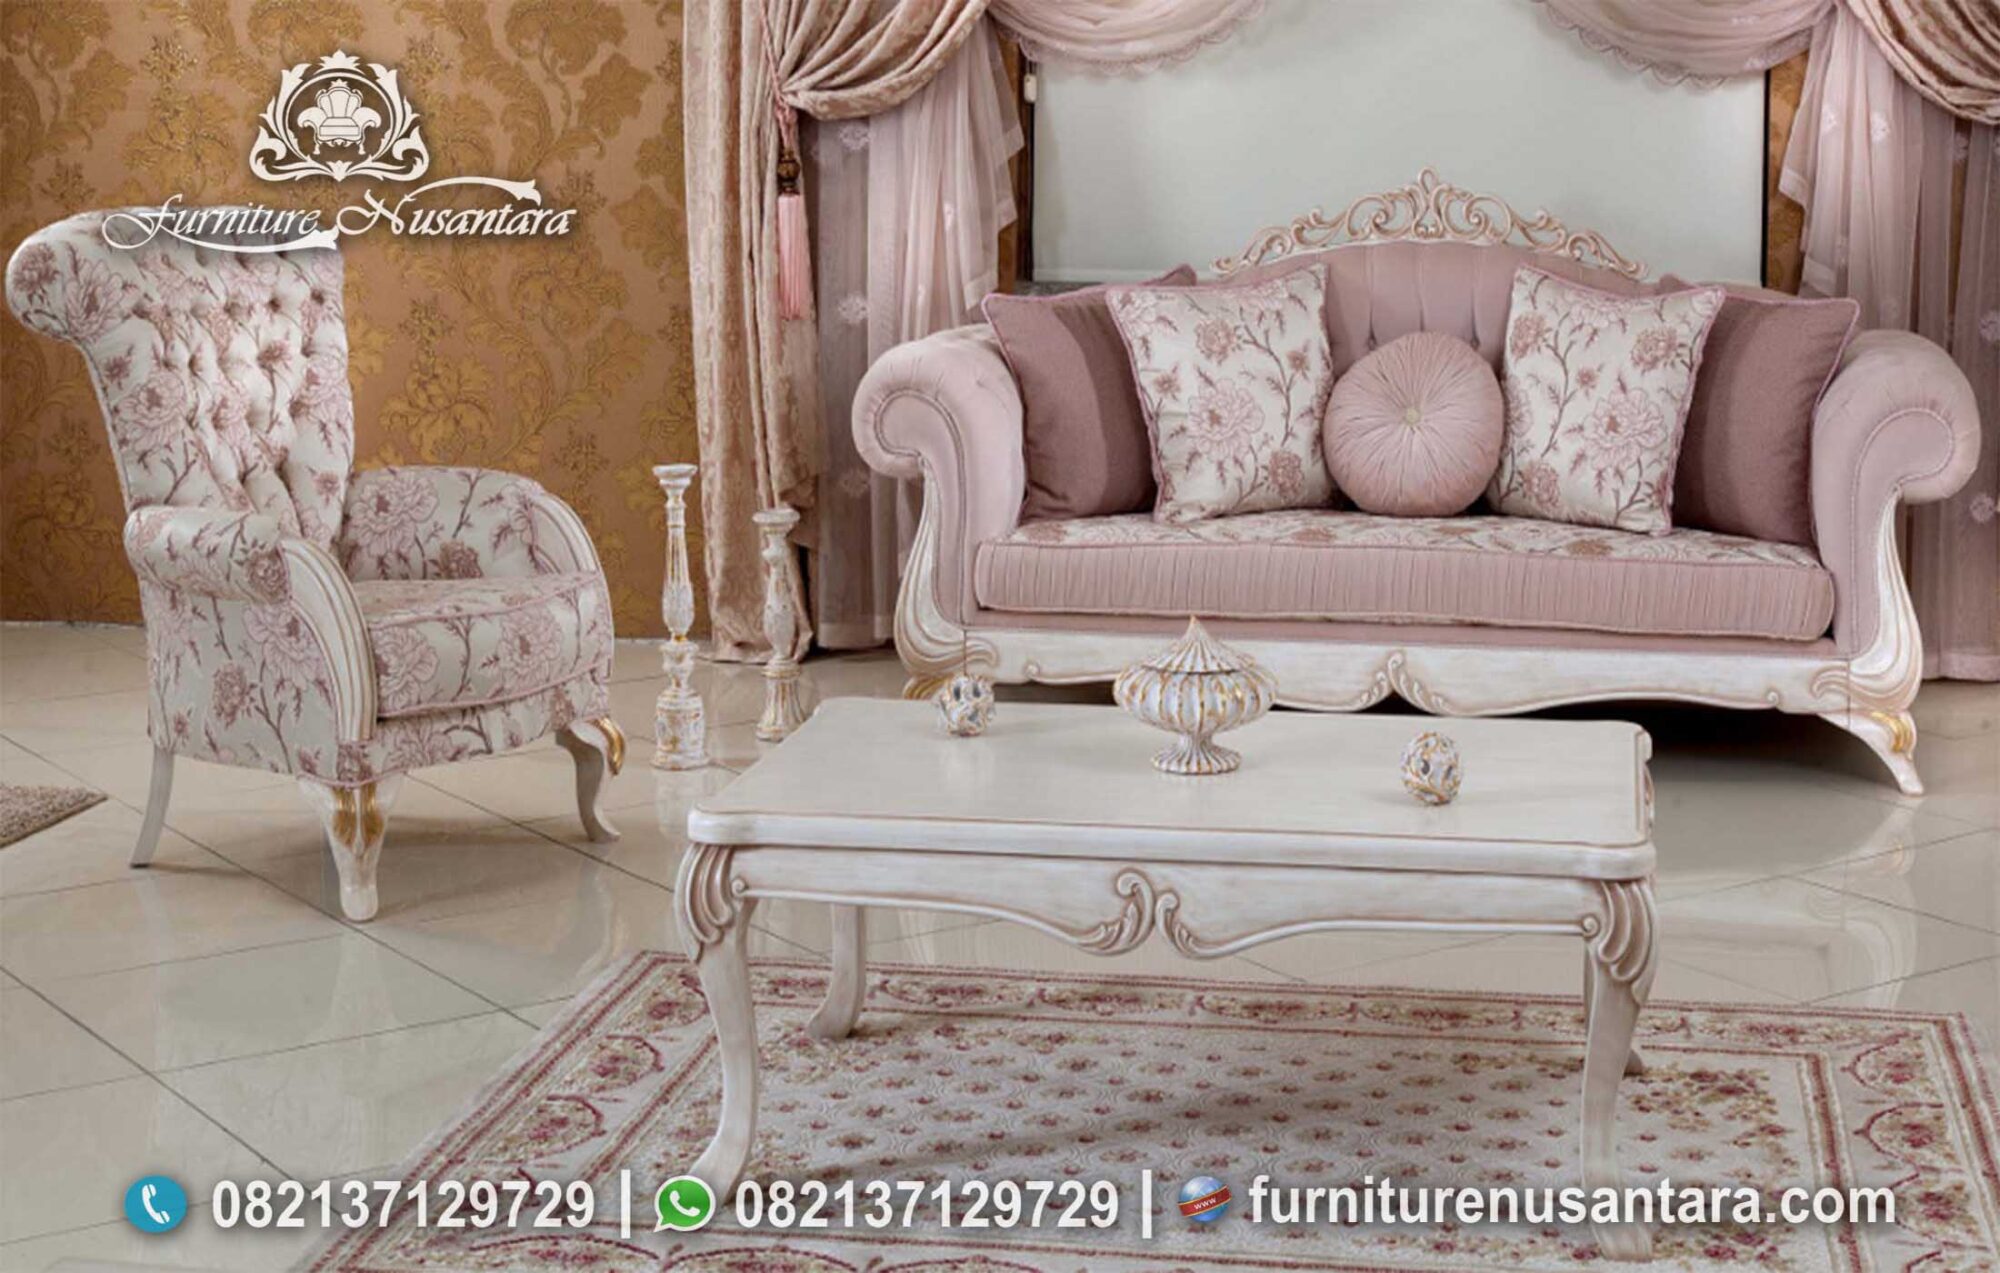 Jual Berbagai Sofa Mewah Model Terbaru ST-41, Furniture Nusantara